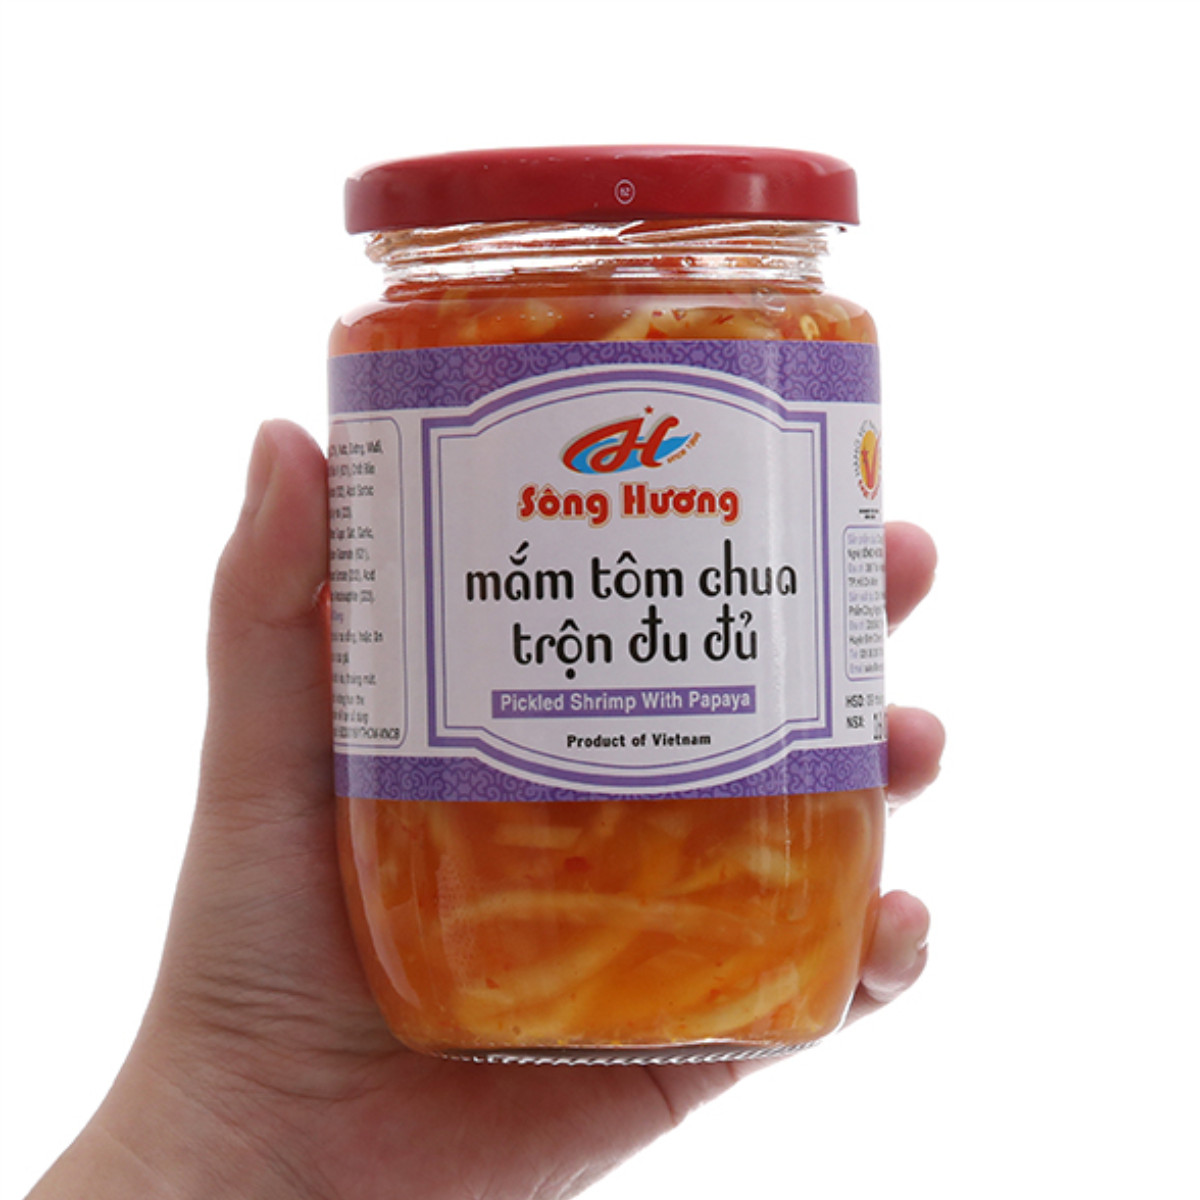 Mắm Tôm Chua Trộn Đu Đủ Sông Hương Foods Hũ 430g